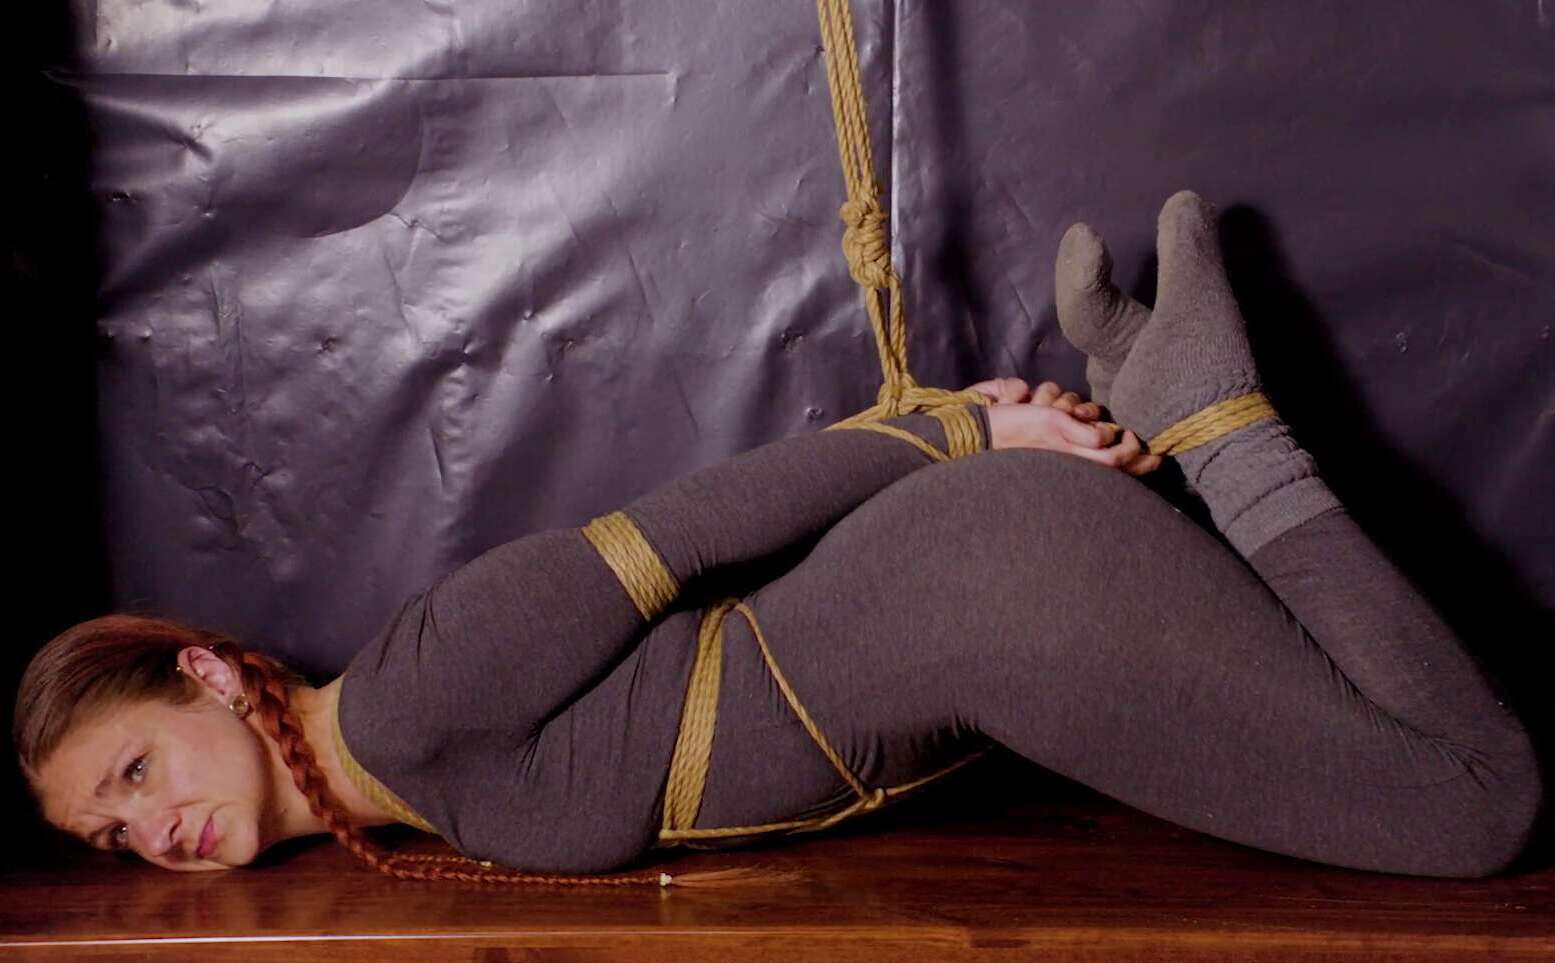 Rachel Organa Rope Hogtie - Rope Bondage